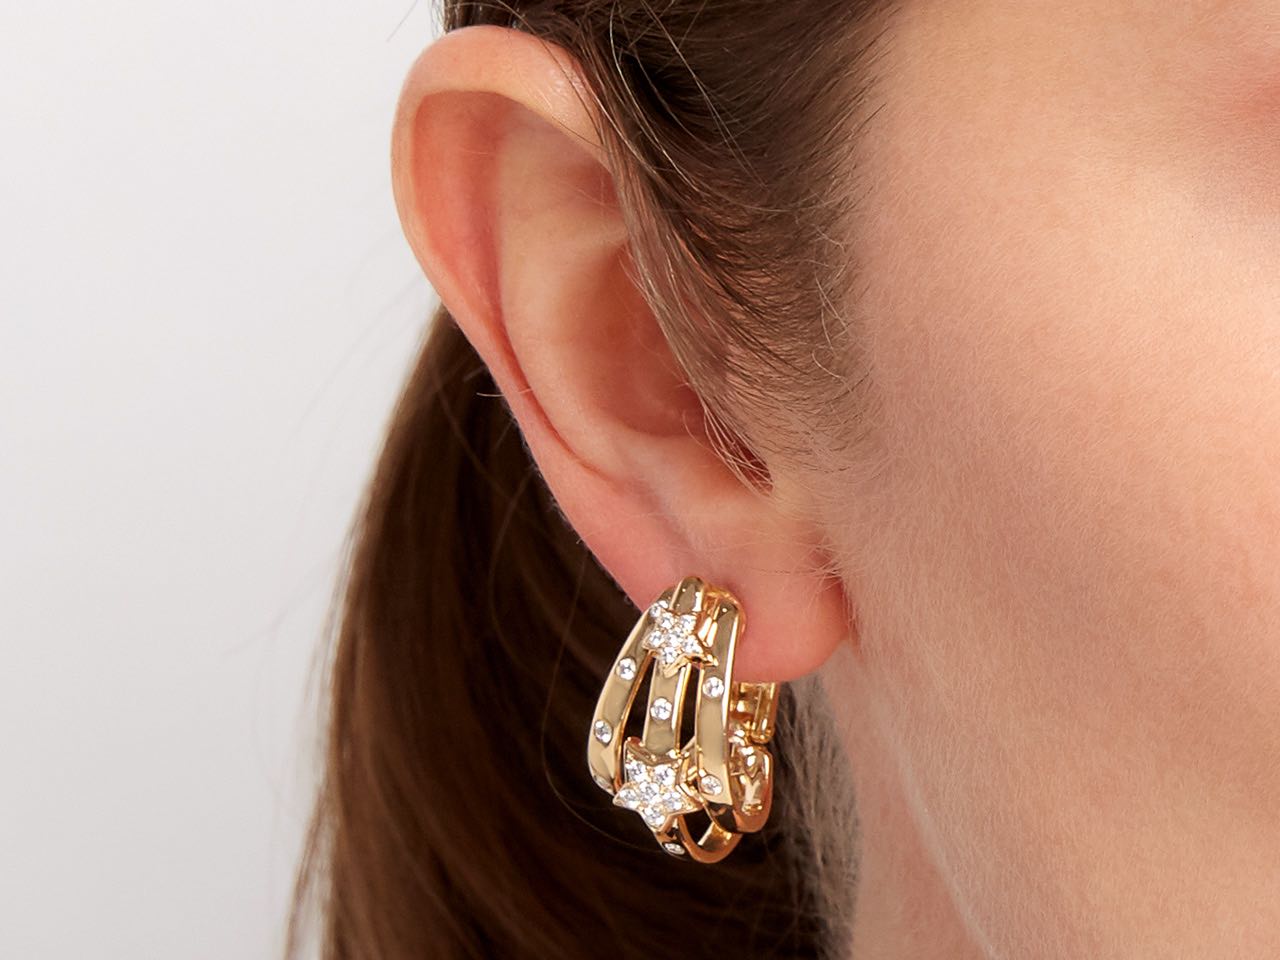 Chanel ear cuff earrings - Gem